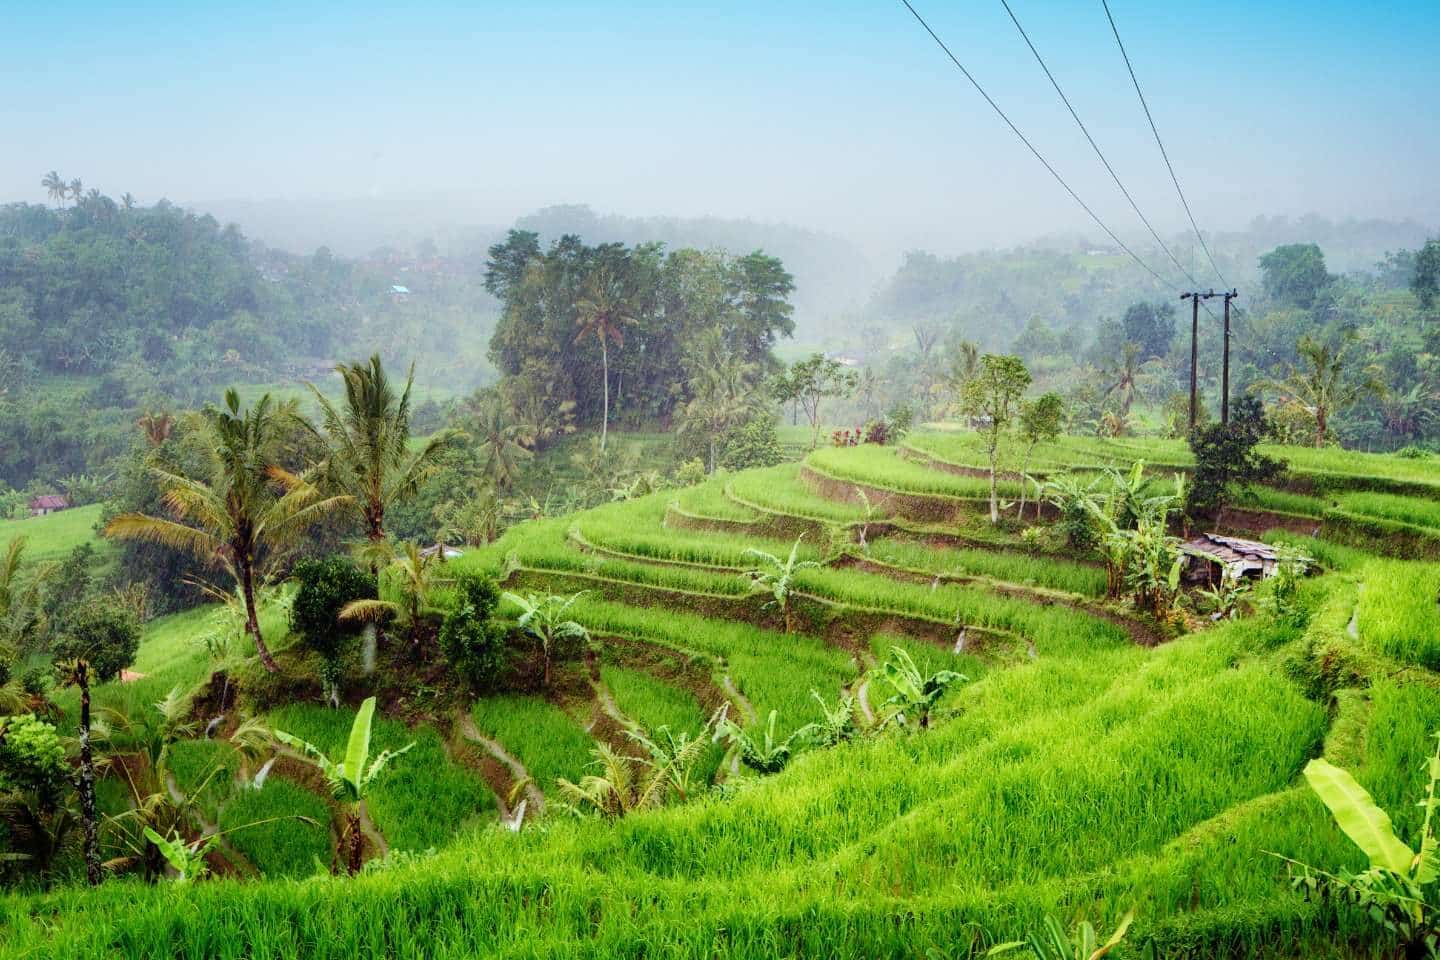 bali rice paddy fields with subak irrigation